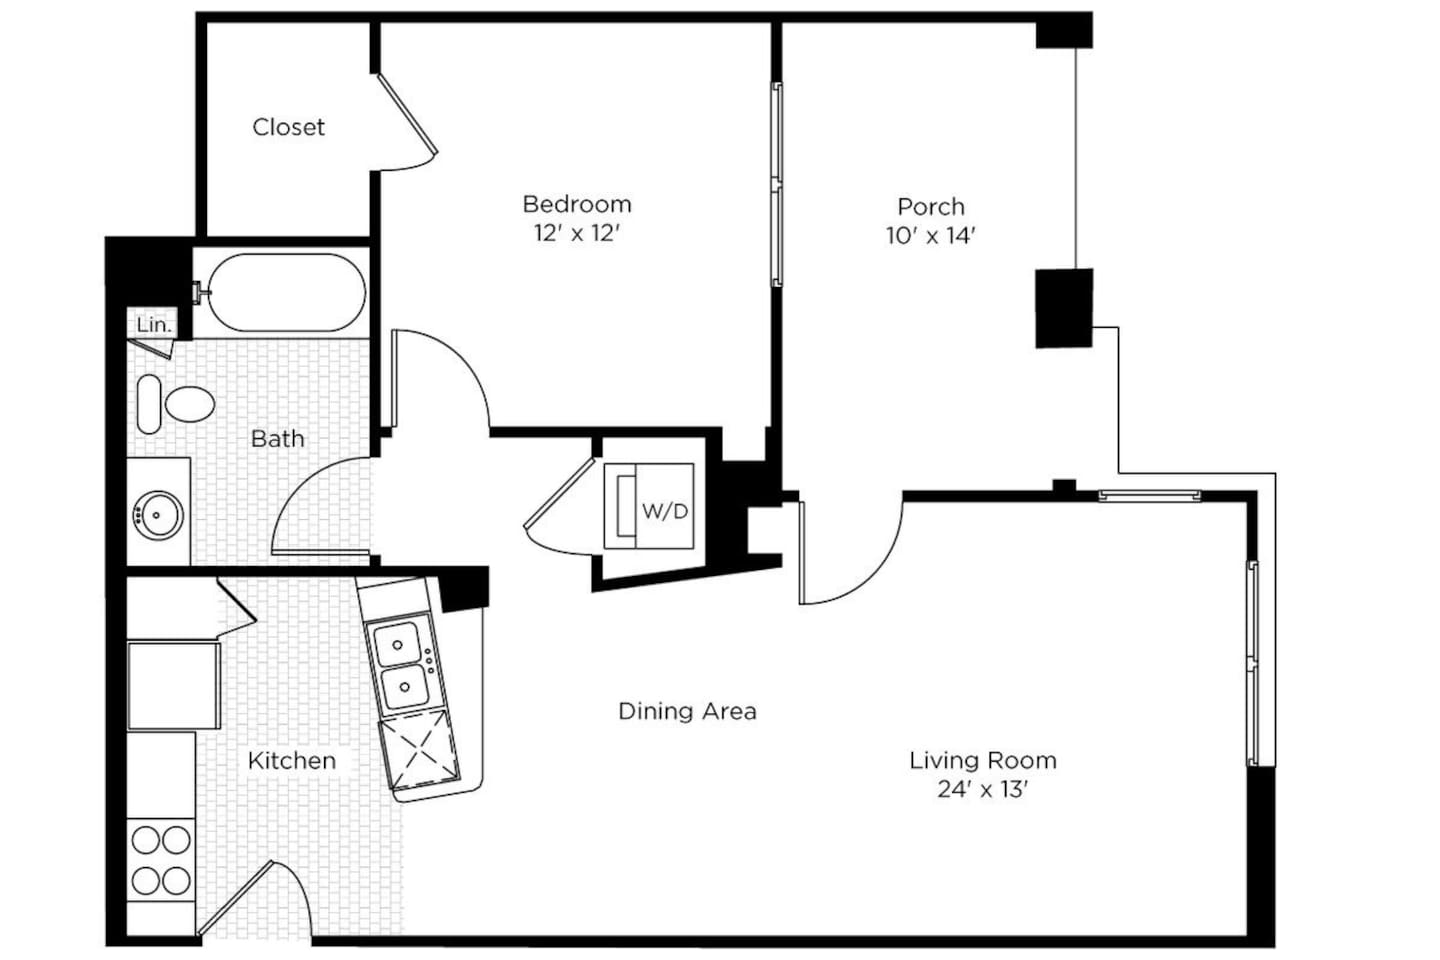 Floorplan diagram for 1CN, showing 1 bedroom